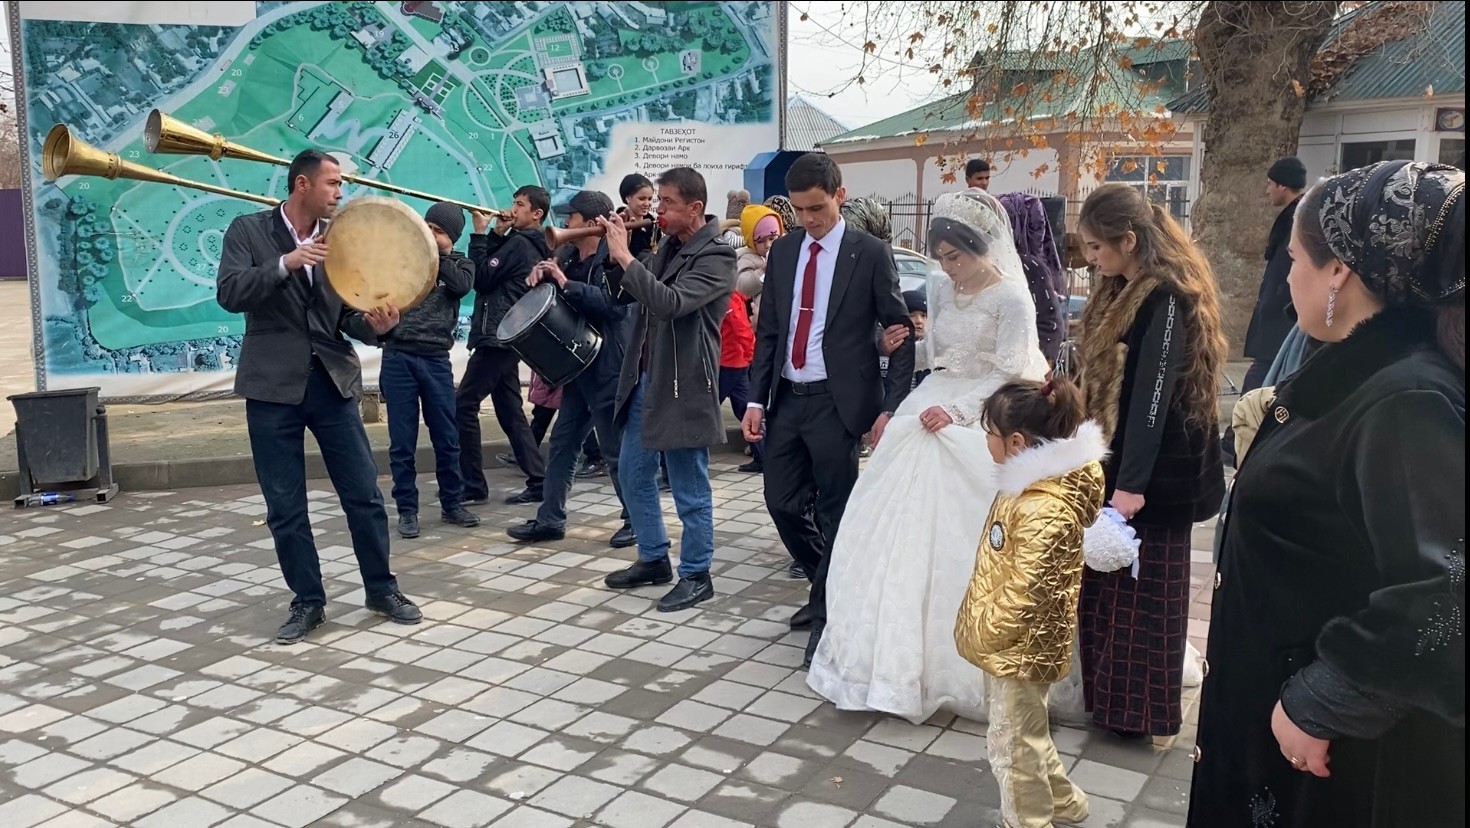 Вокруг свадьбы таджики празднуют еще несколько торжеств